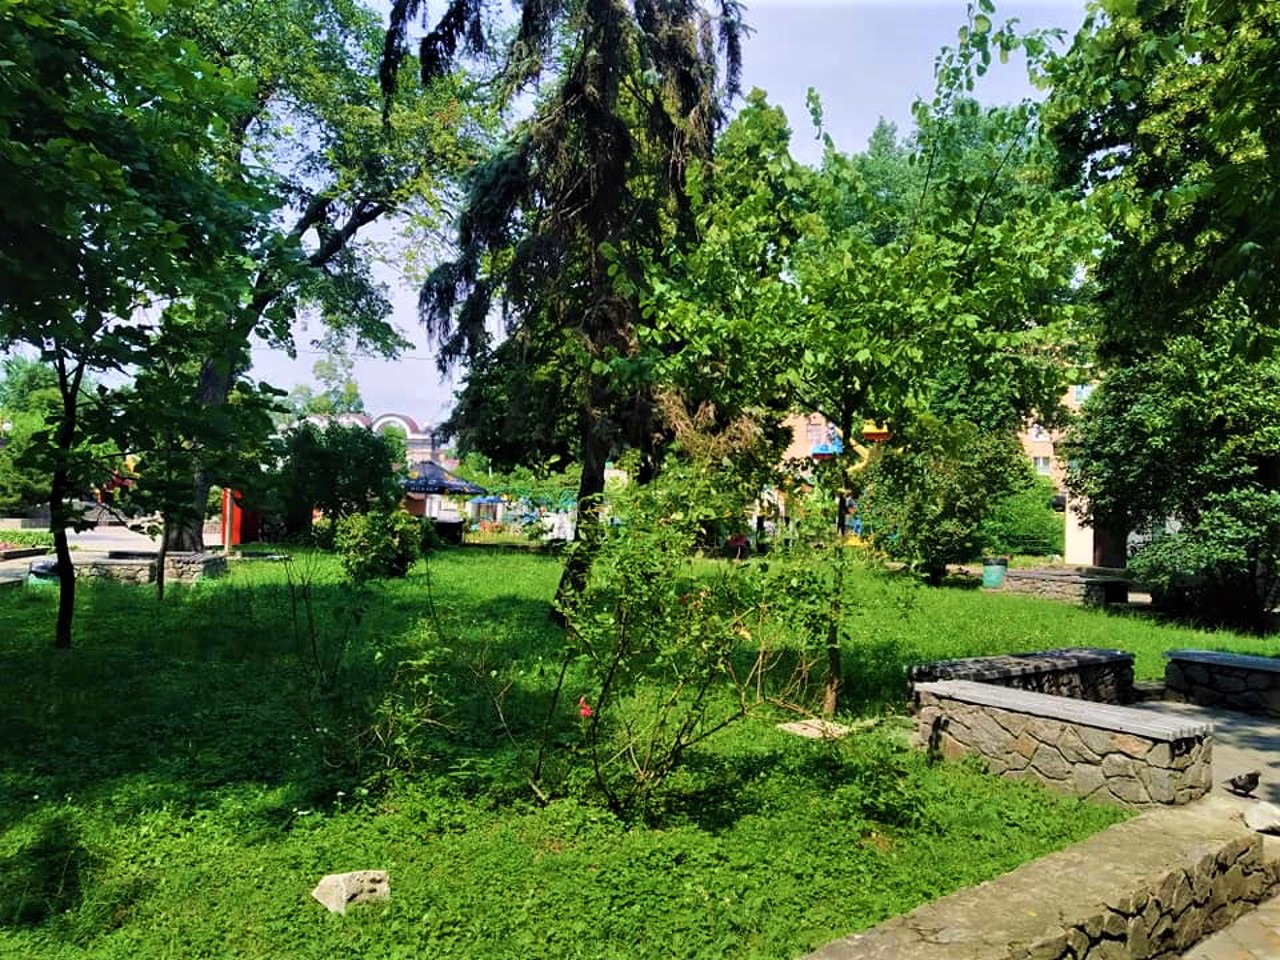 Shevchenko Park, Bila Tserkva